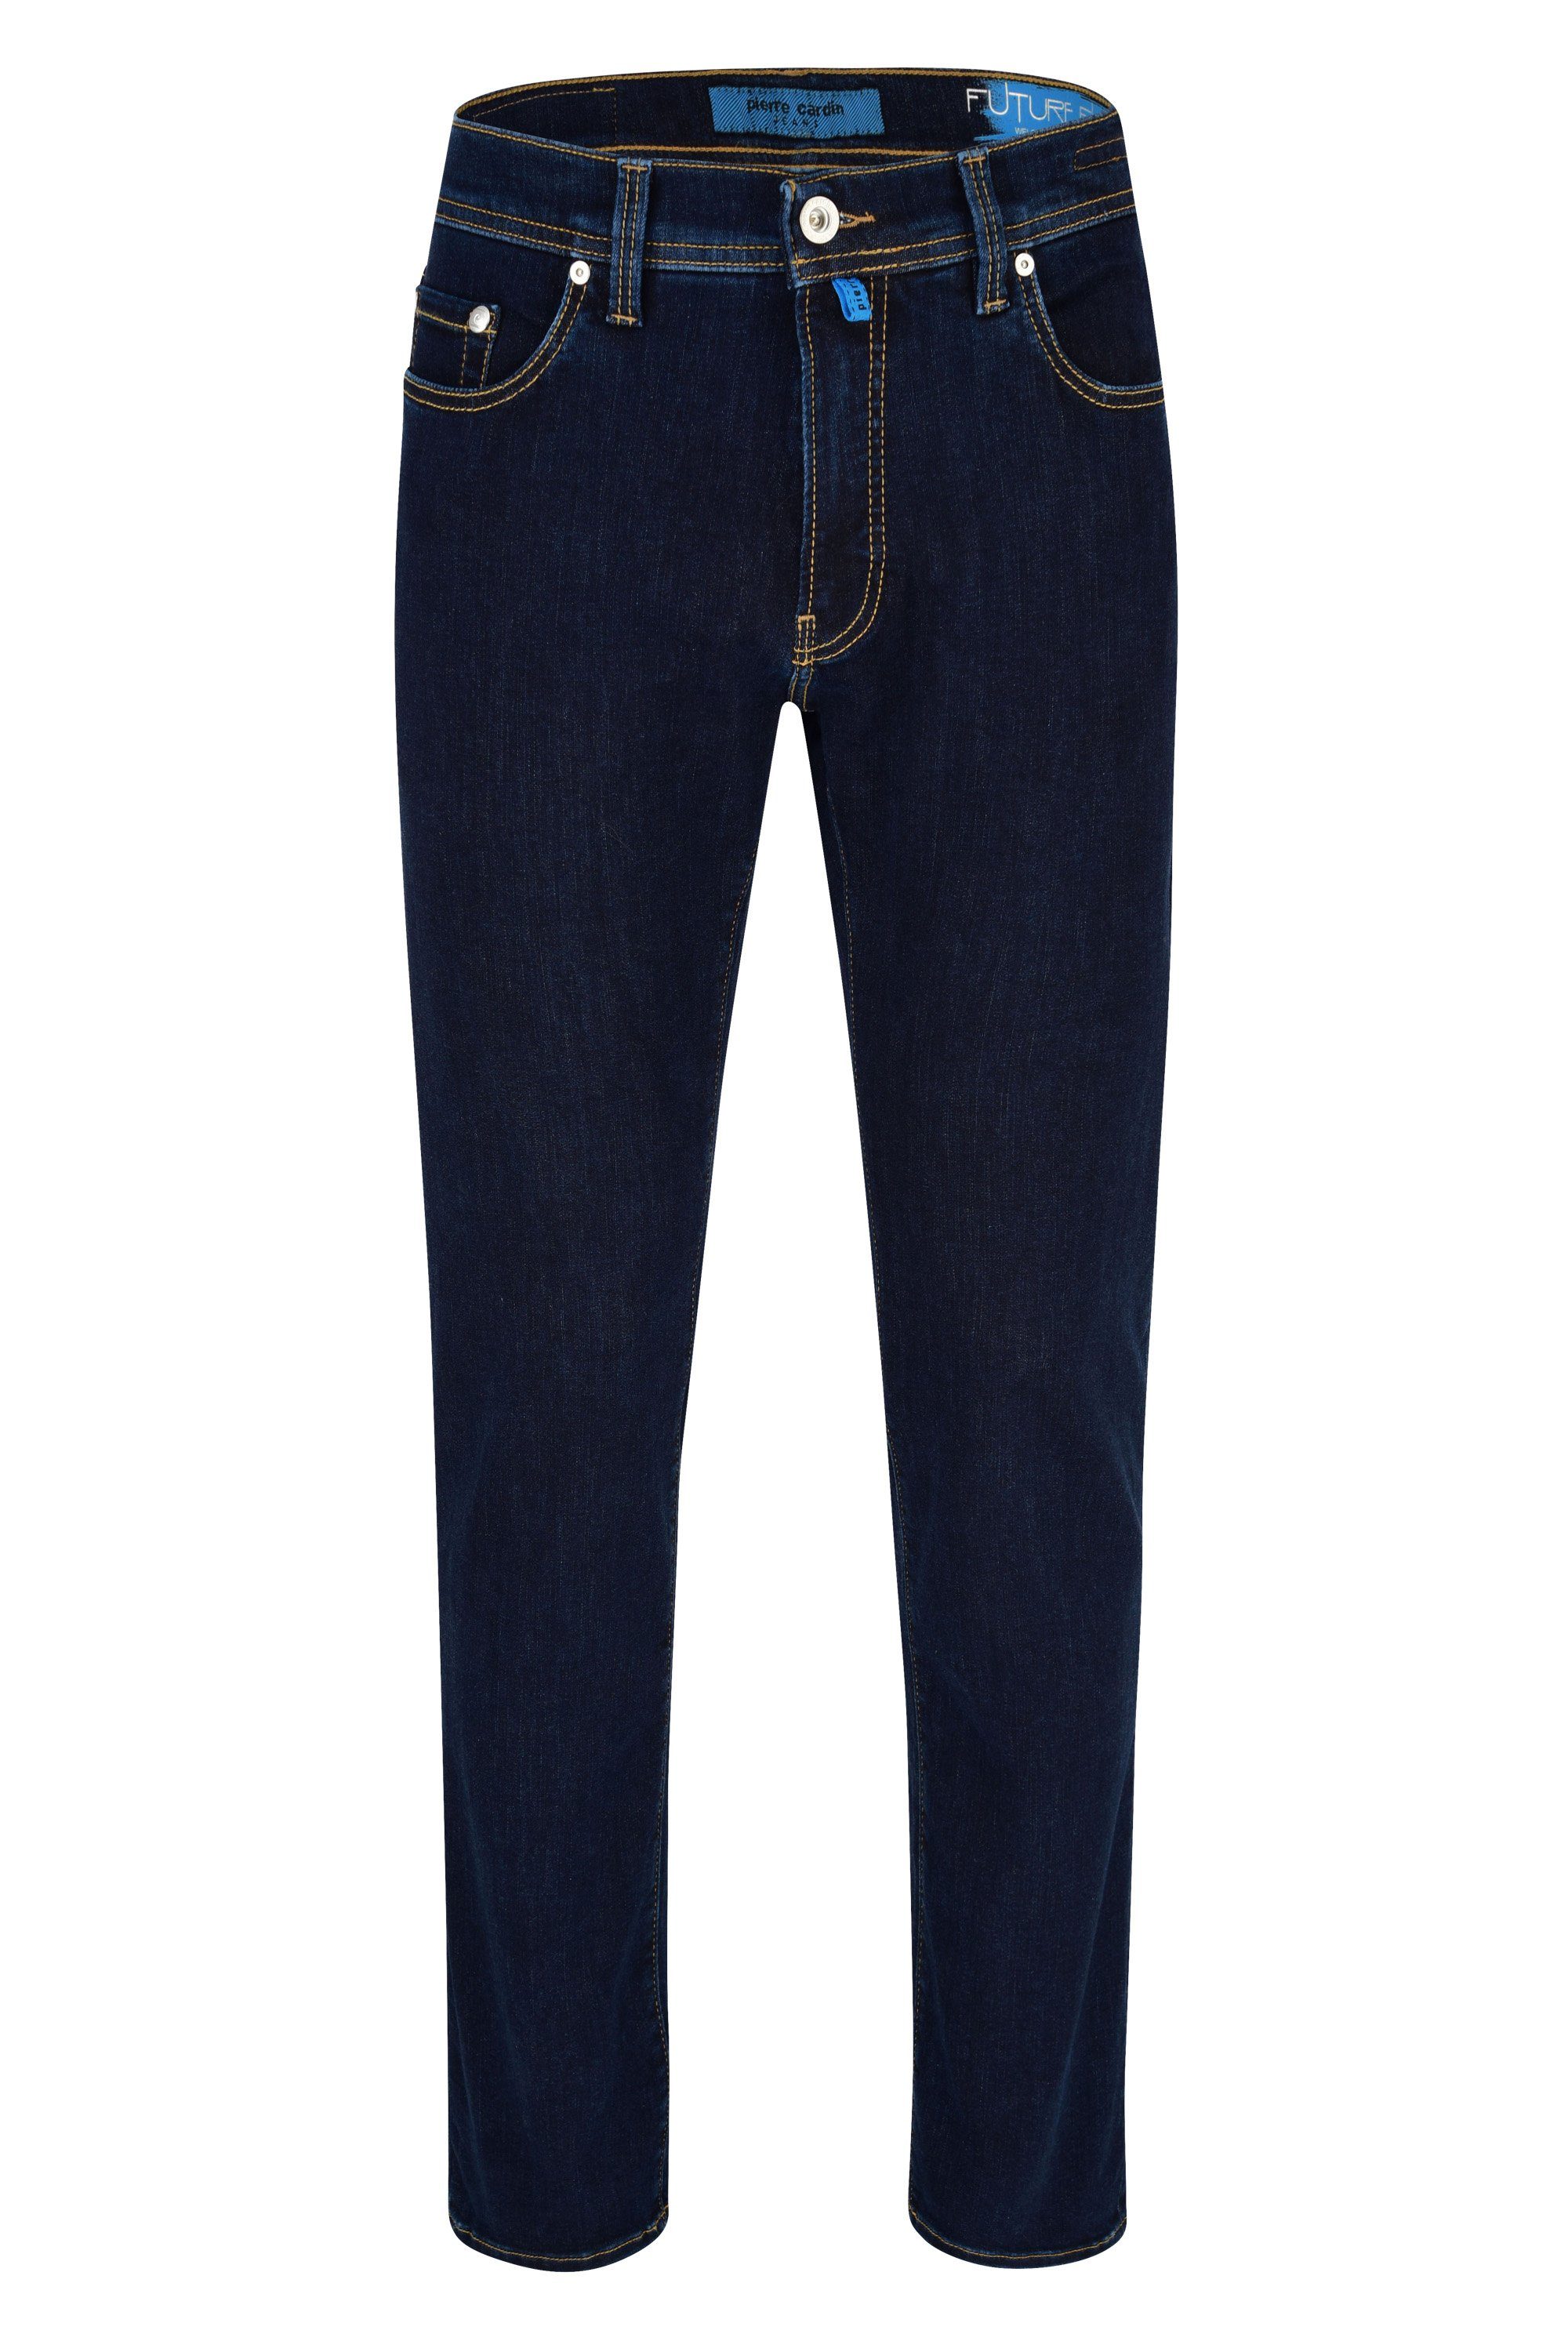 Pierre Cardin 5-Pocket-Jeans PIERRE CARDIN FUTUREFLEX LYON dark blue 3451 8880.89 | Jeans